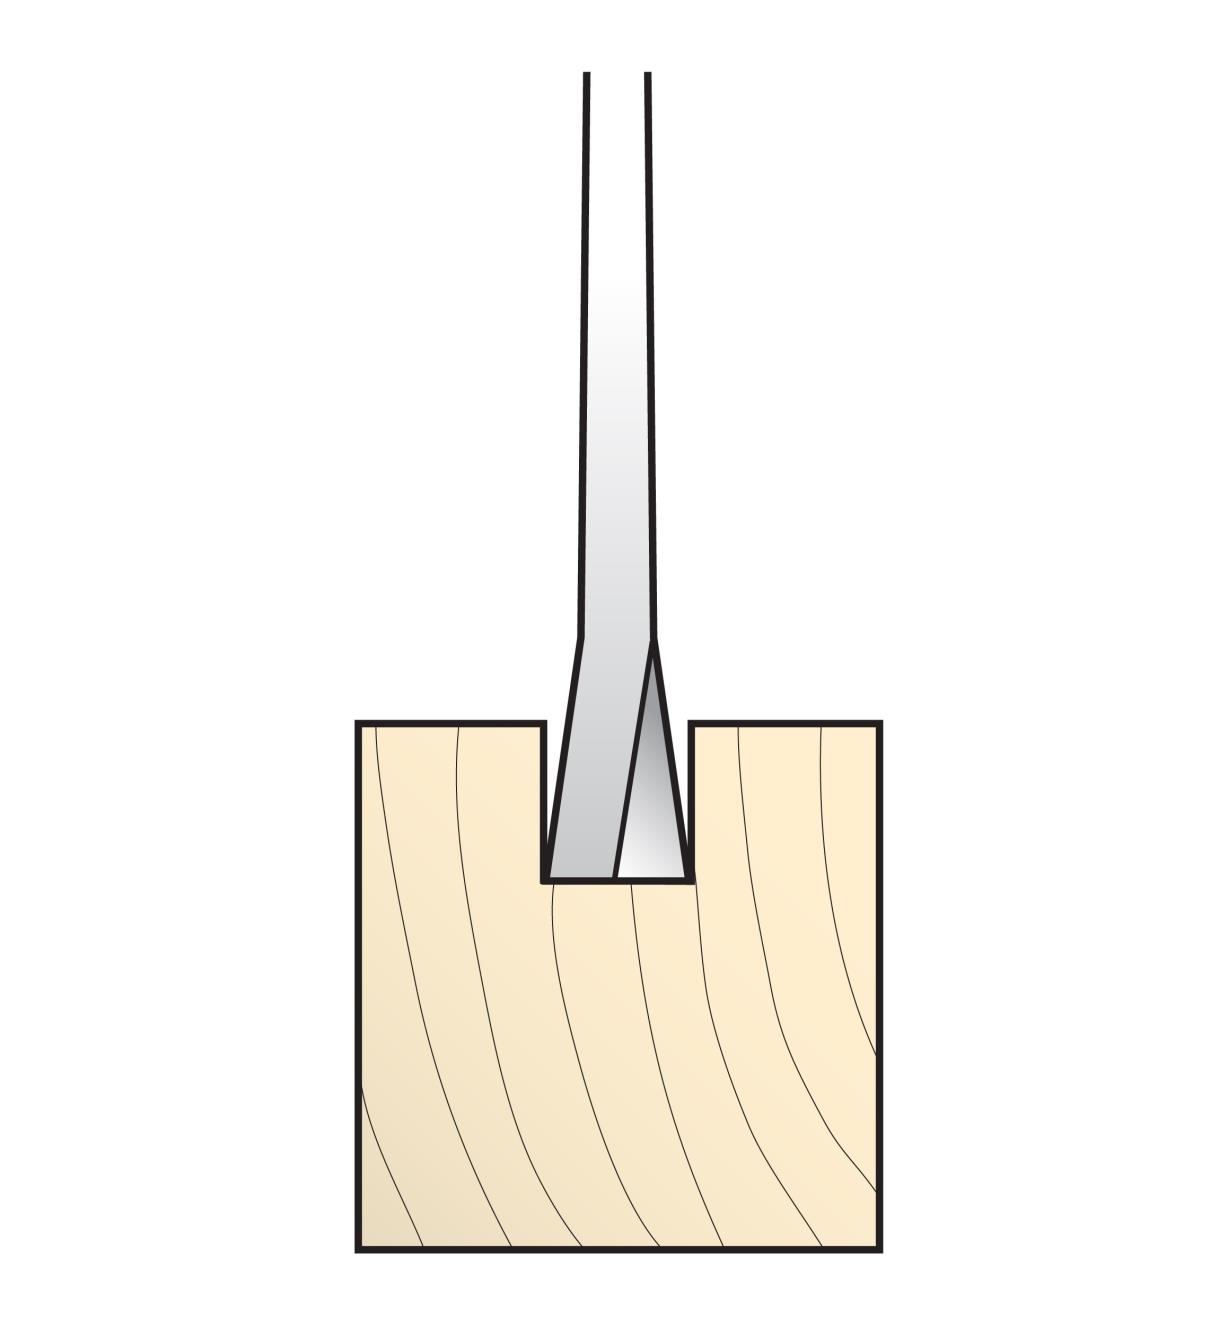 Cutaway illustration of saw teeth cutting into wood